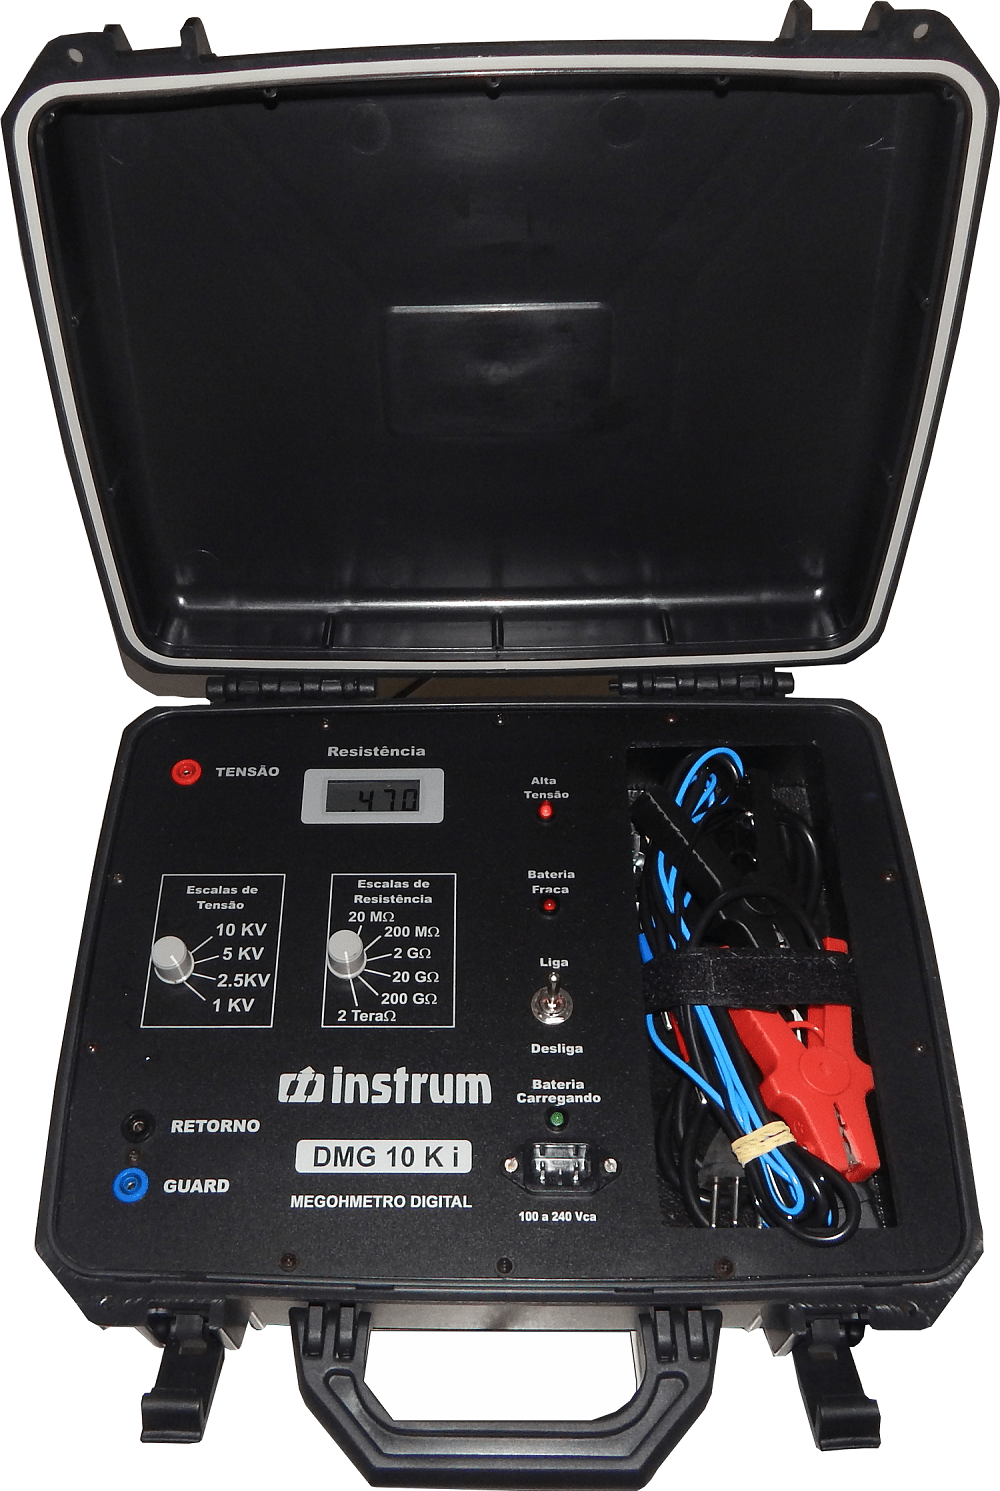 Megômetro (2TOhm/10KV) Instrum DMG-10Ki